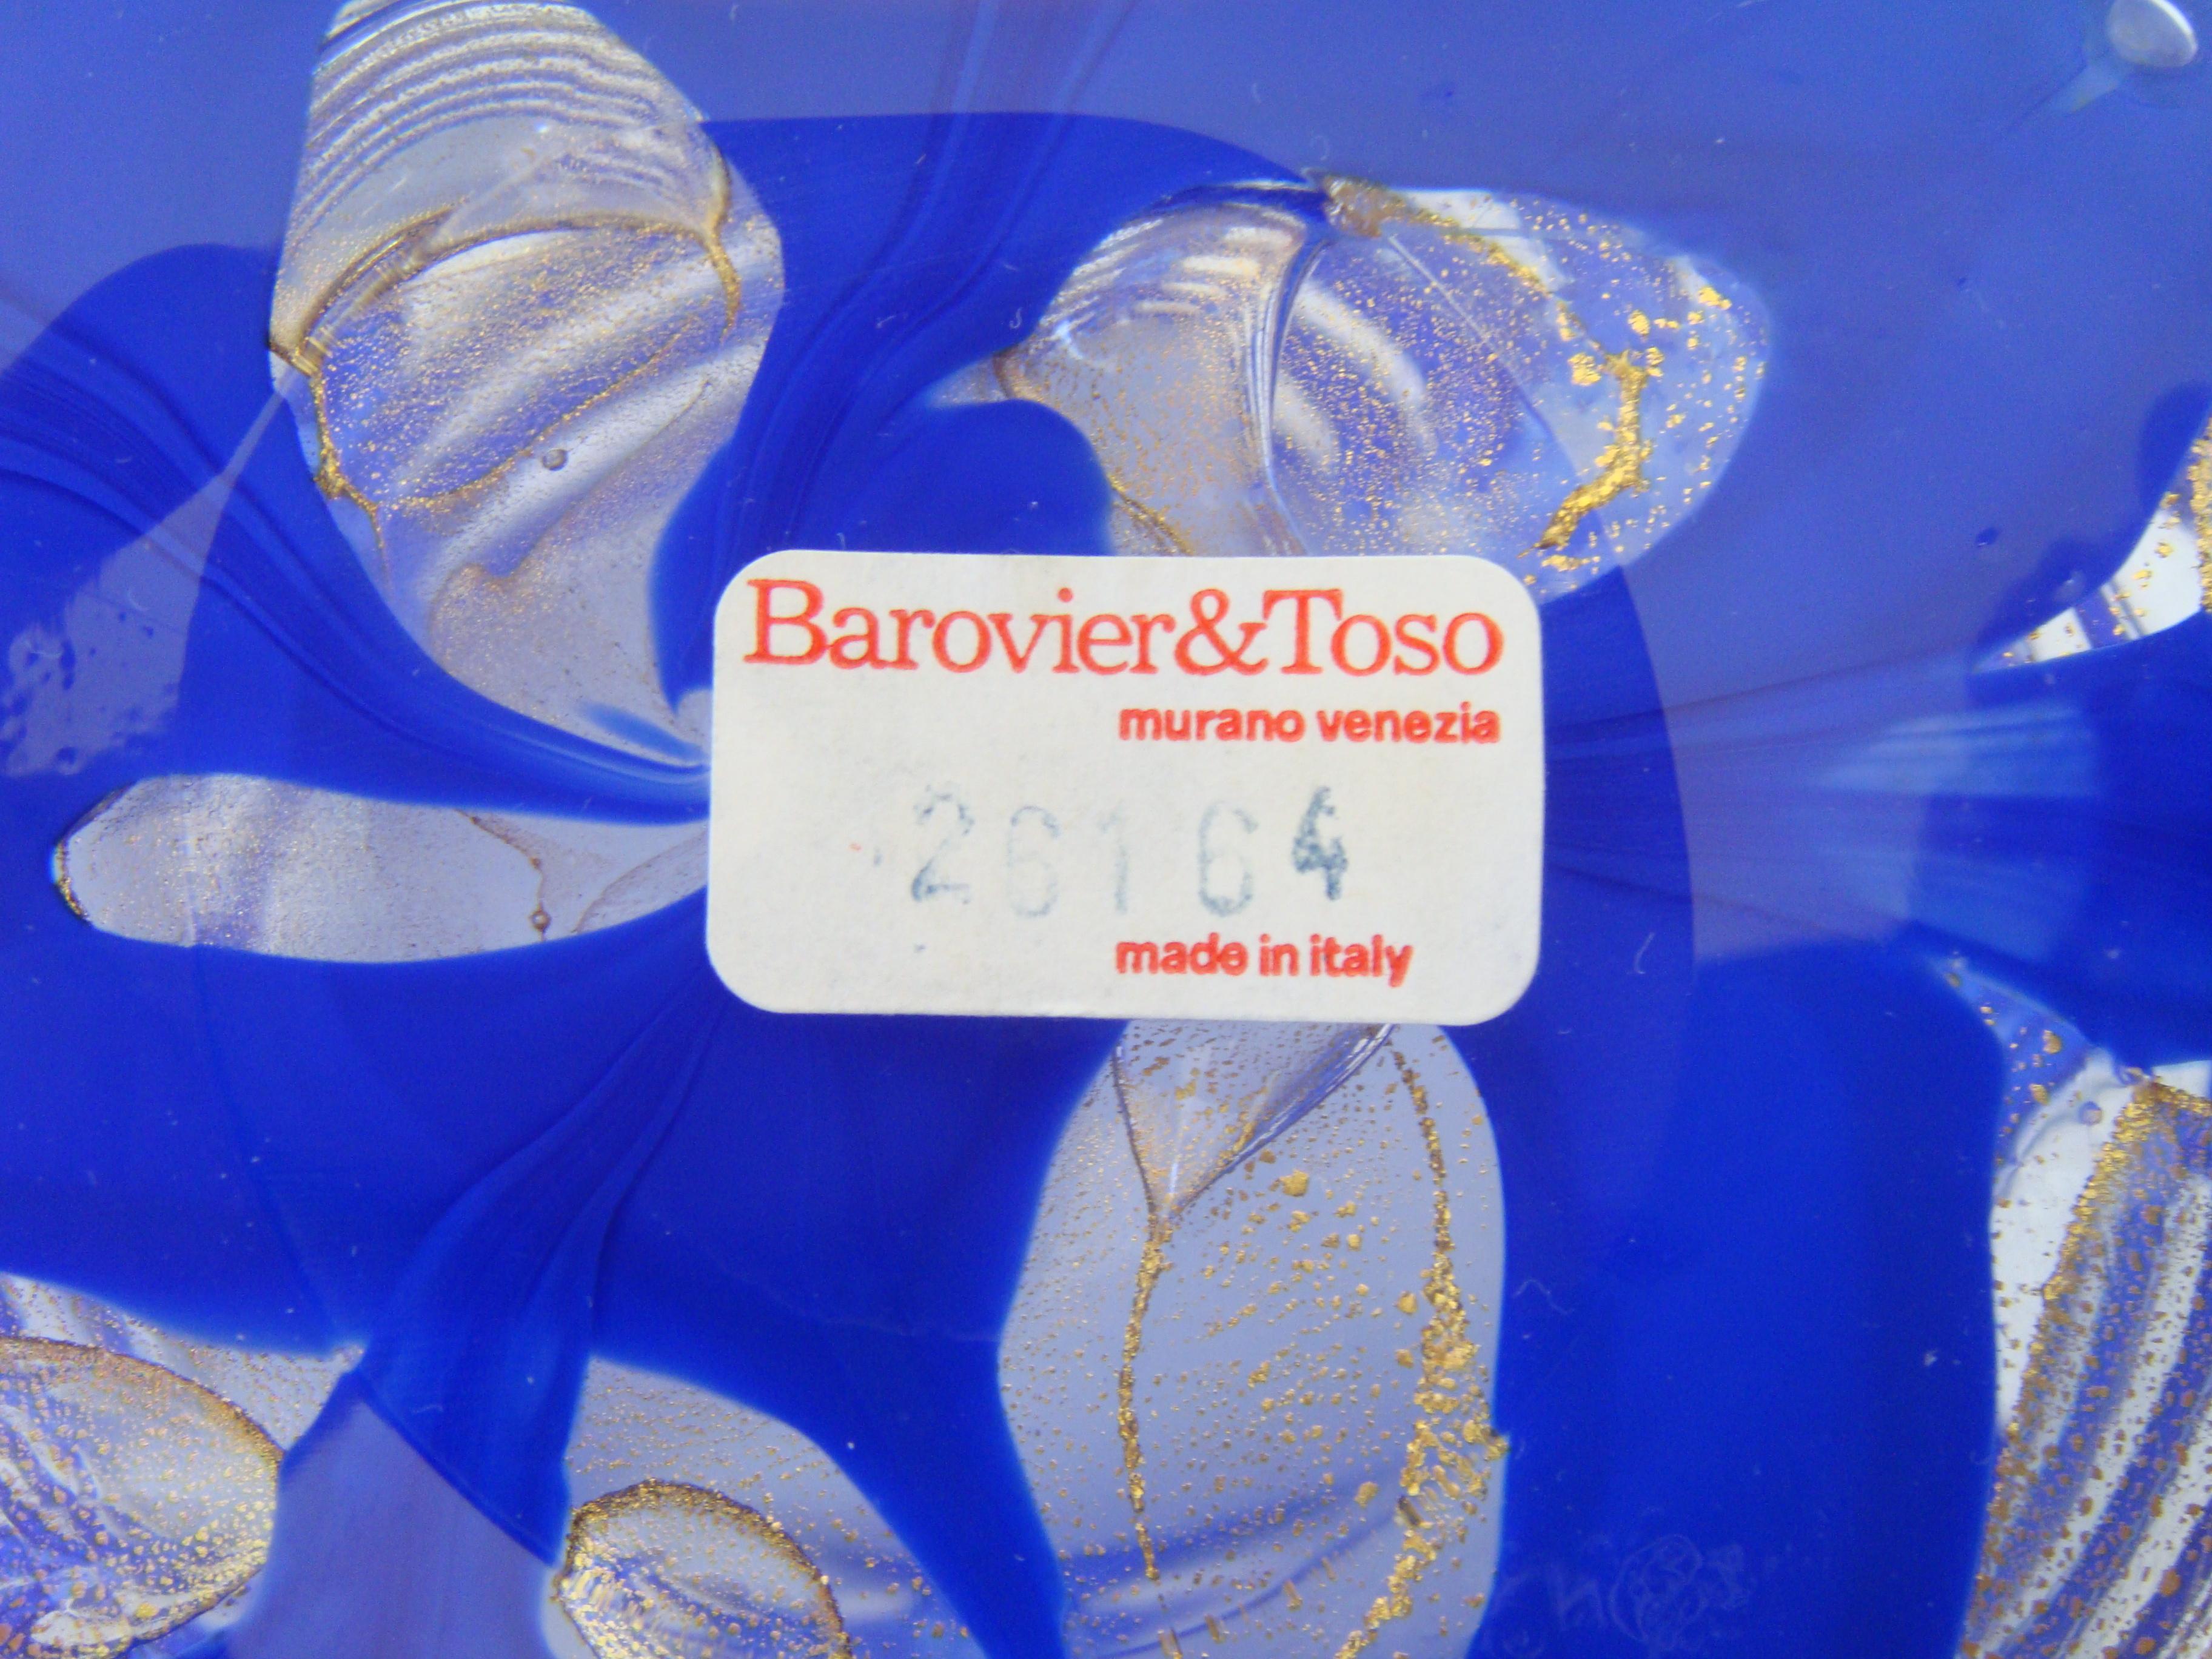 Des traits audacieux de bleu royal mélangés à des œillets de poussière d'or. Le vase est gravé Barovier&Toso à la base, ainsi qu'une étiquette en papier avec le numéro de modèle. Une étiquette en plastique transparent de Barovier&Toso est également